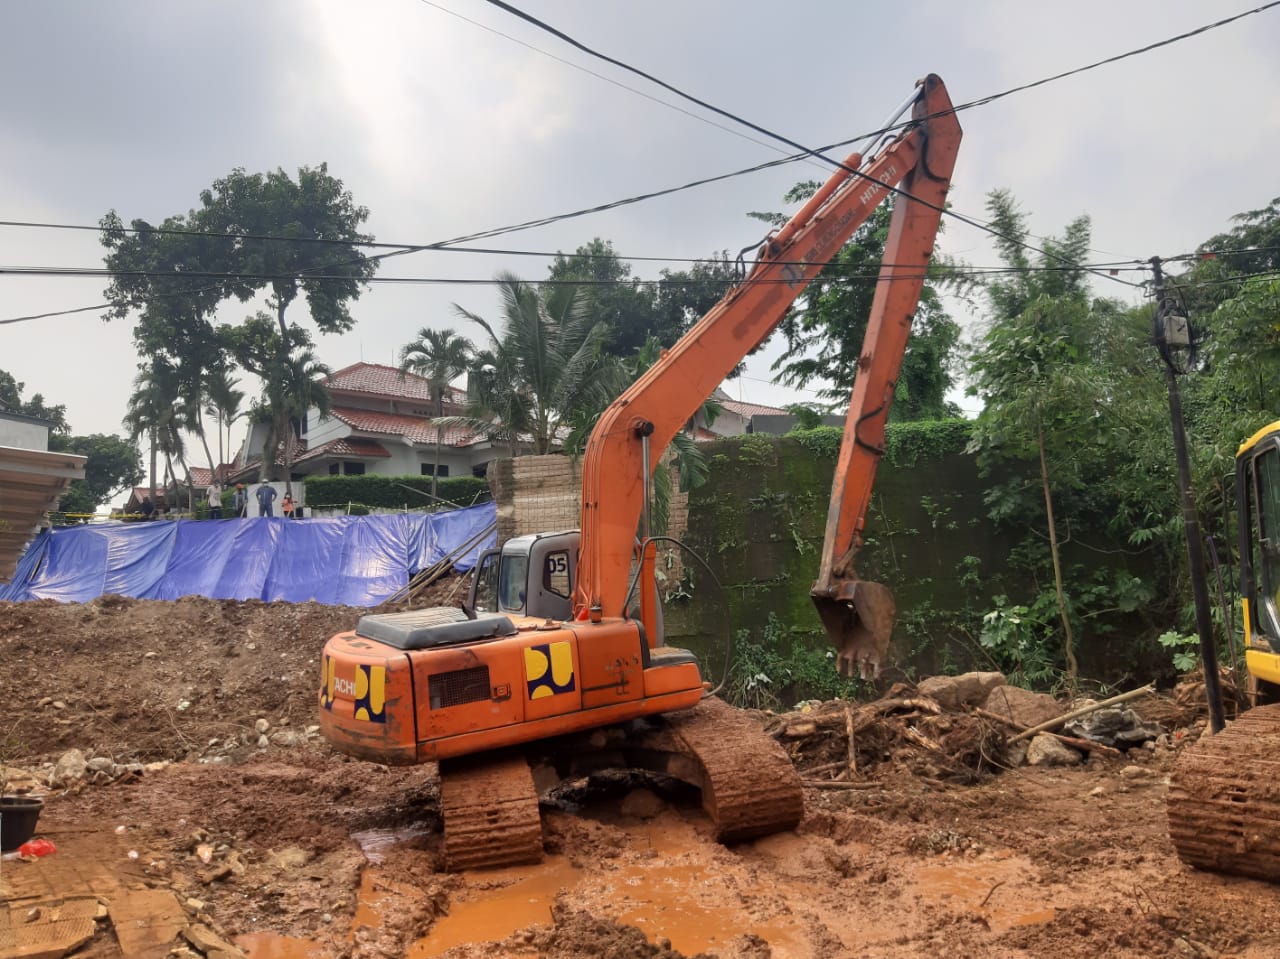 Banjir yang merendam sebagian rumah warga di Perumahan Nerada Estate, Cipayung, Ciputat, Kota Tangerang Selatan, saat di benahi dengan kedaraan berat jenis Excavator, Senin, 14 Juni 2021.